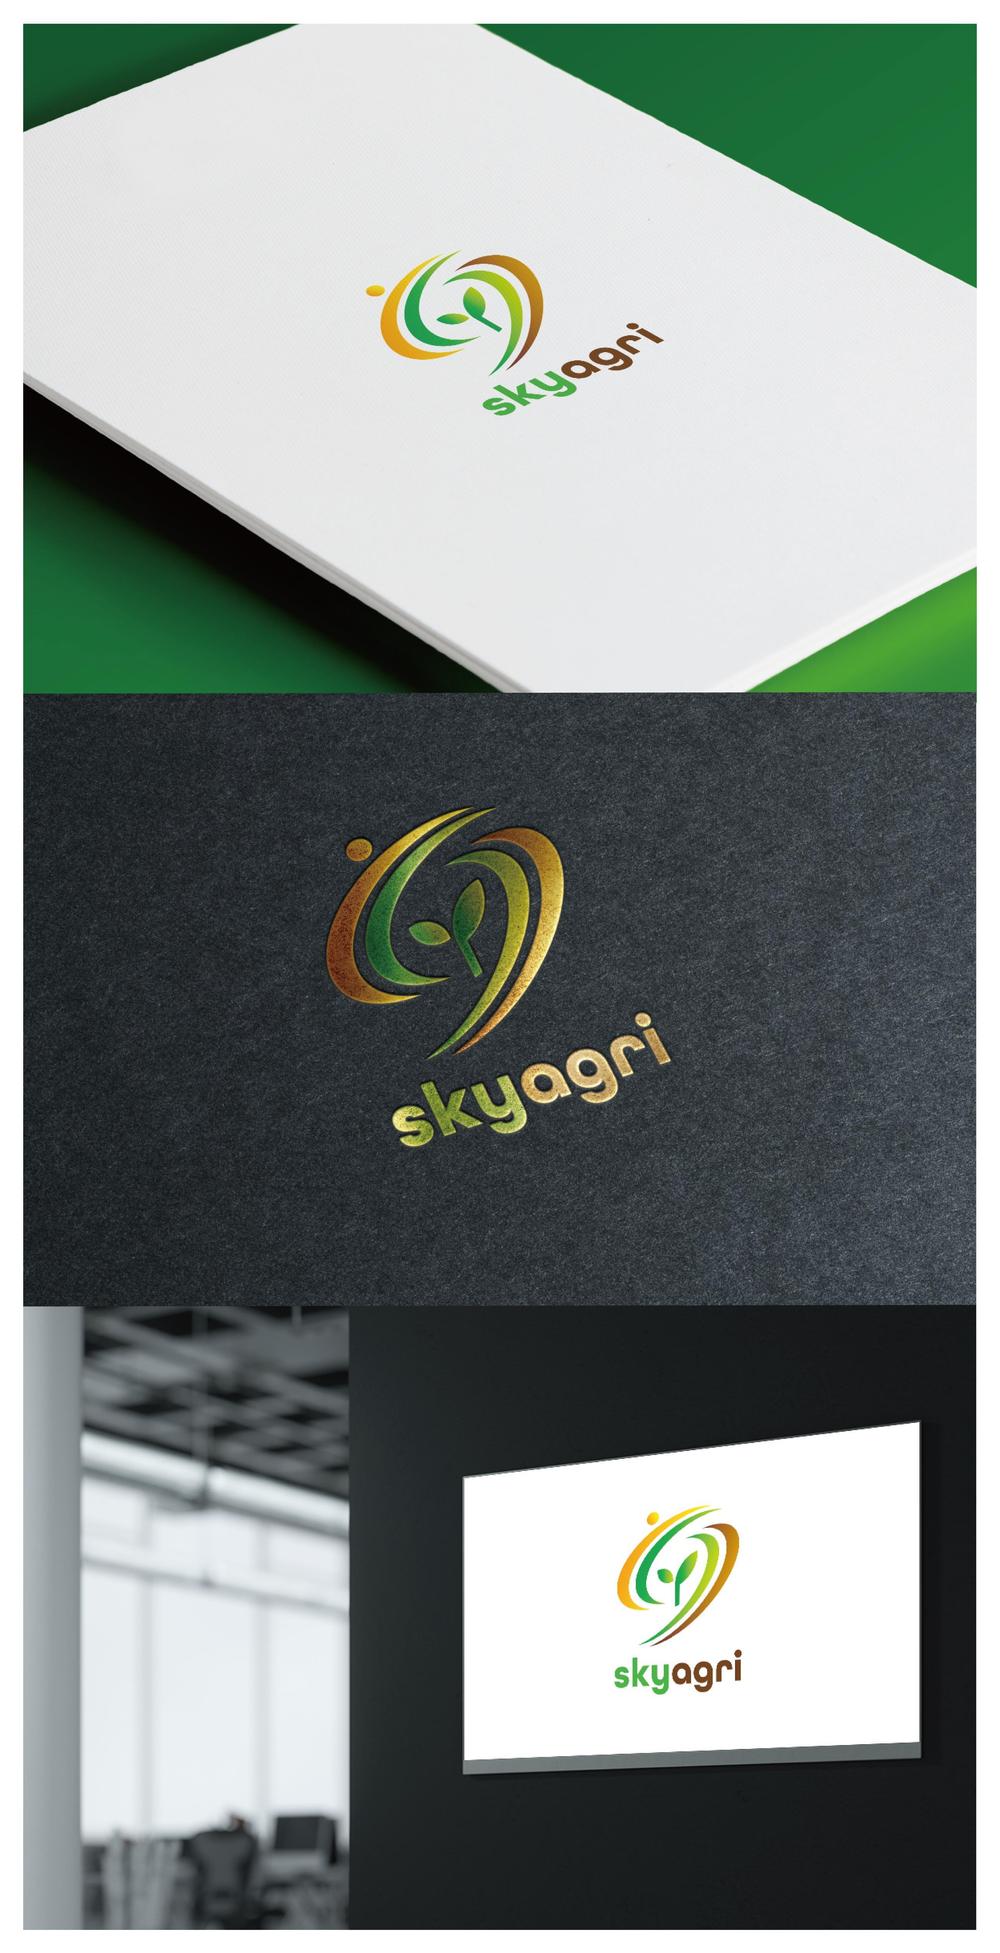 skyagri_logo02_01.jpg